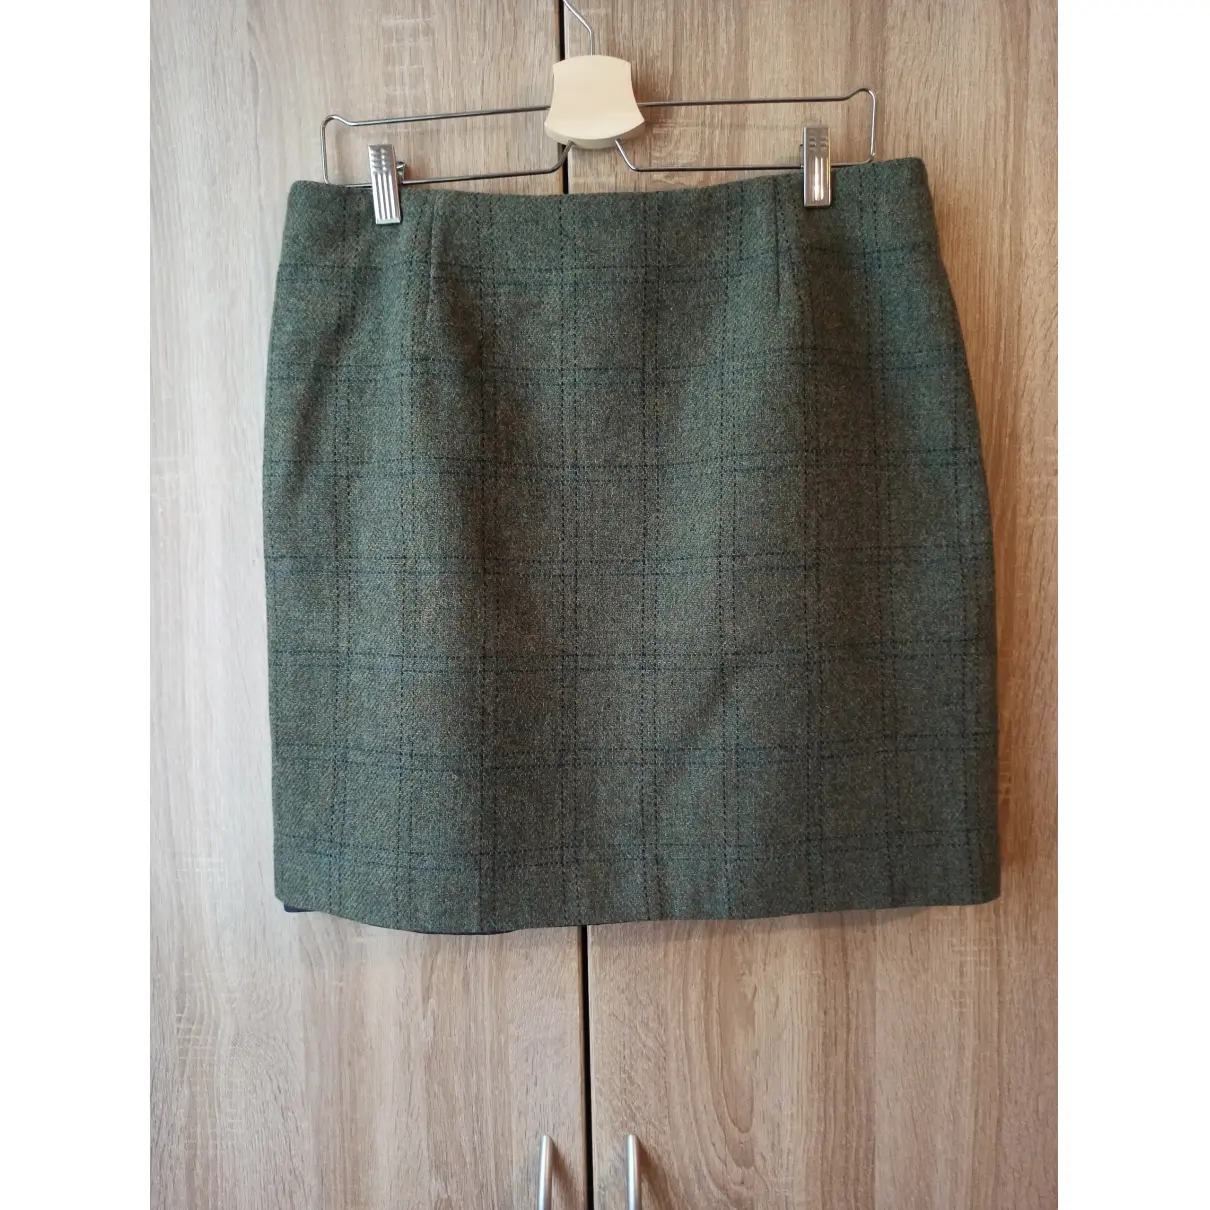 Buy Gant Wool mid-length skirt online